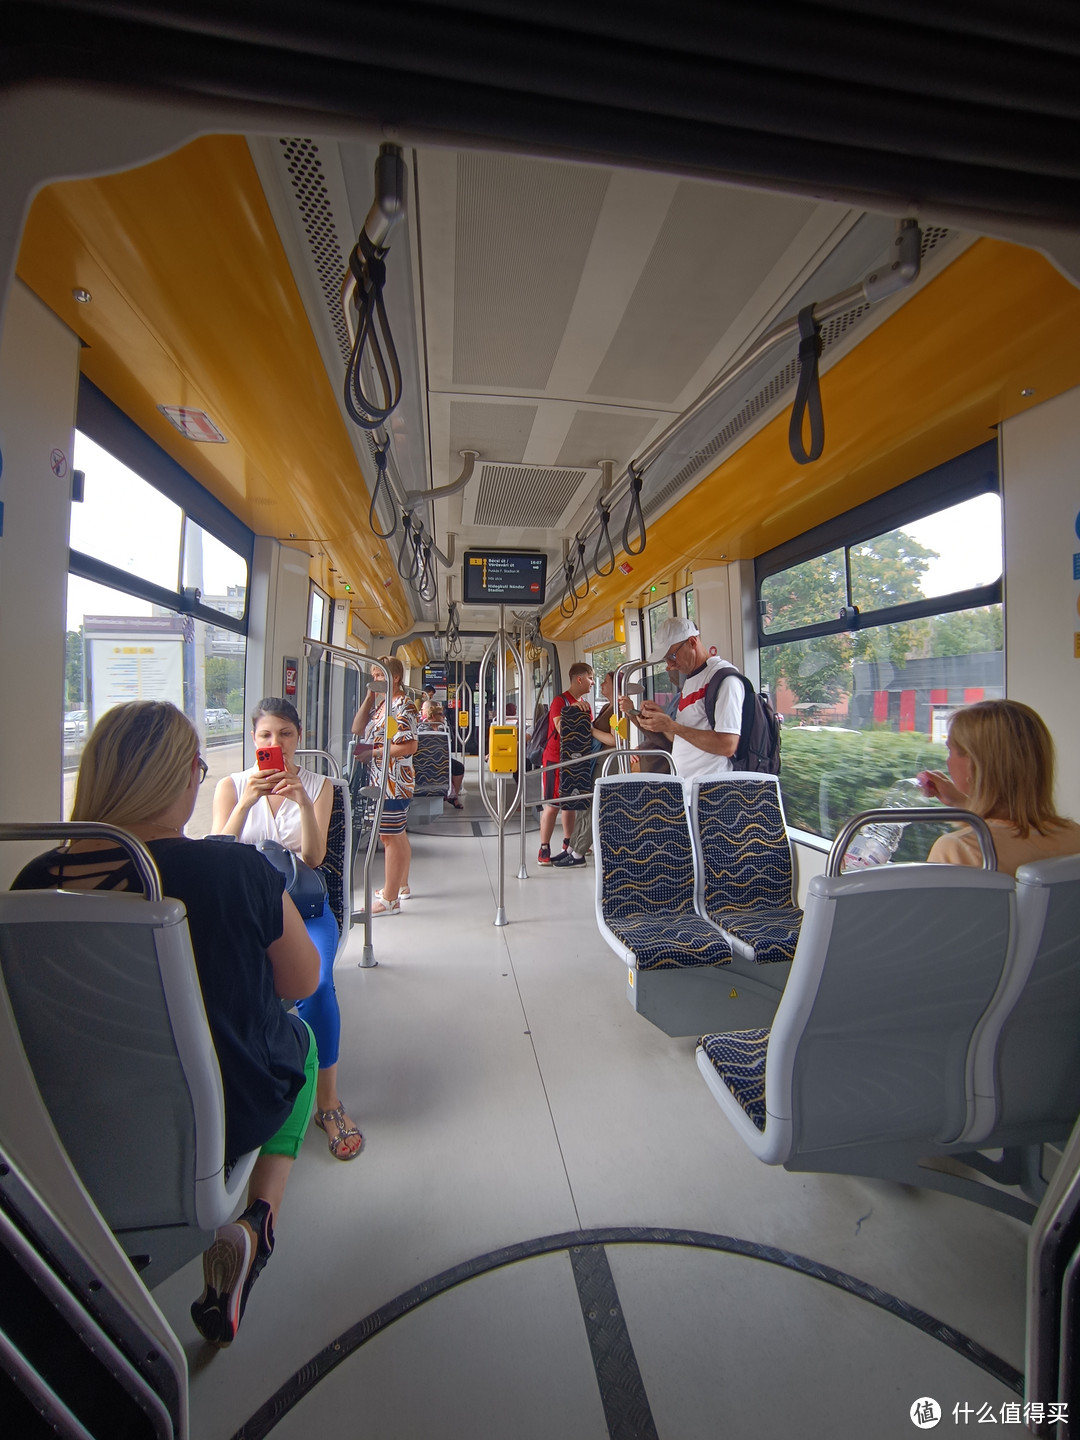 这是布达佩斯有轨电车的内，也是我最喜欢的布达佩斯公共交通工具。